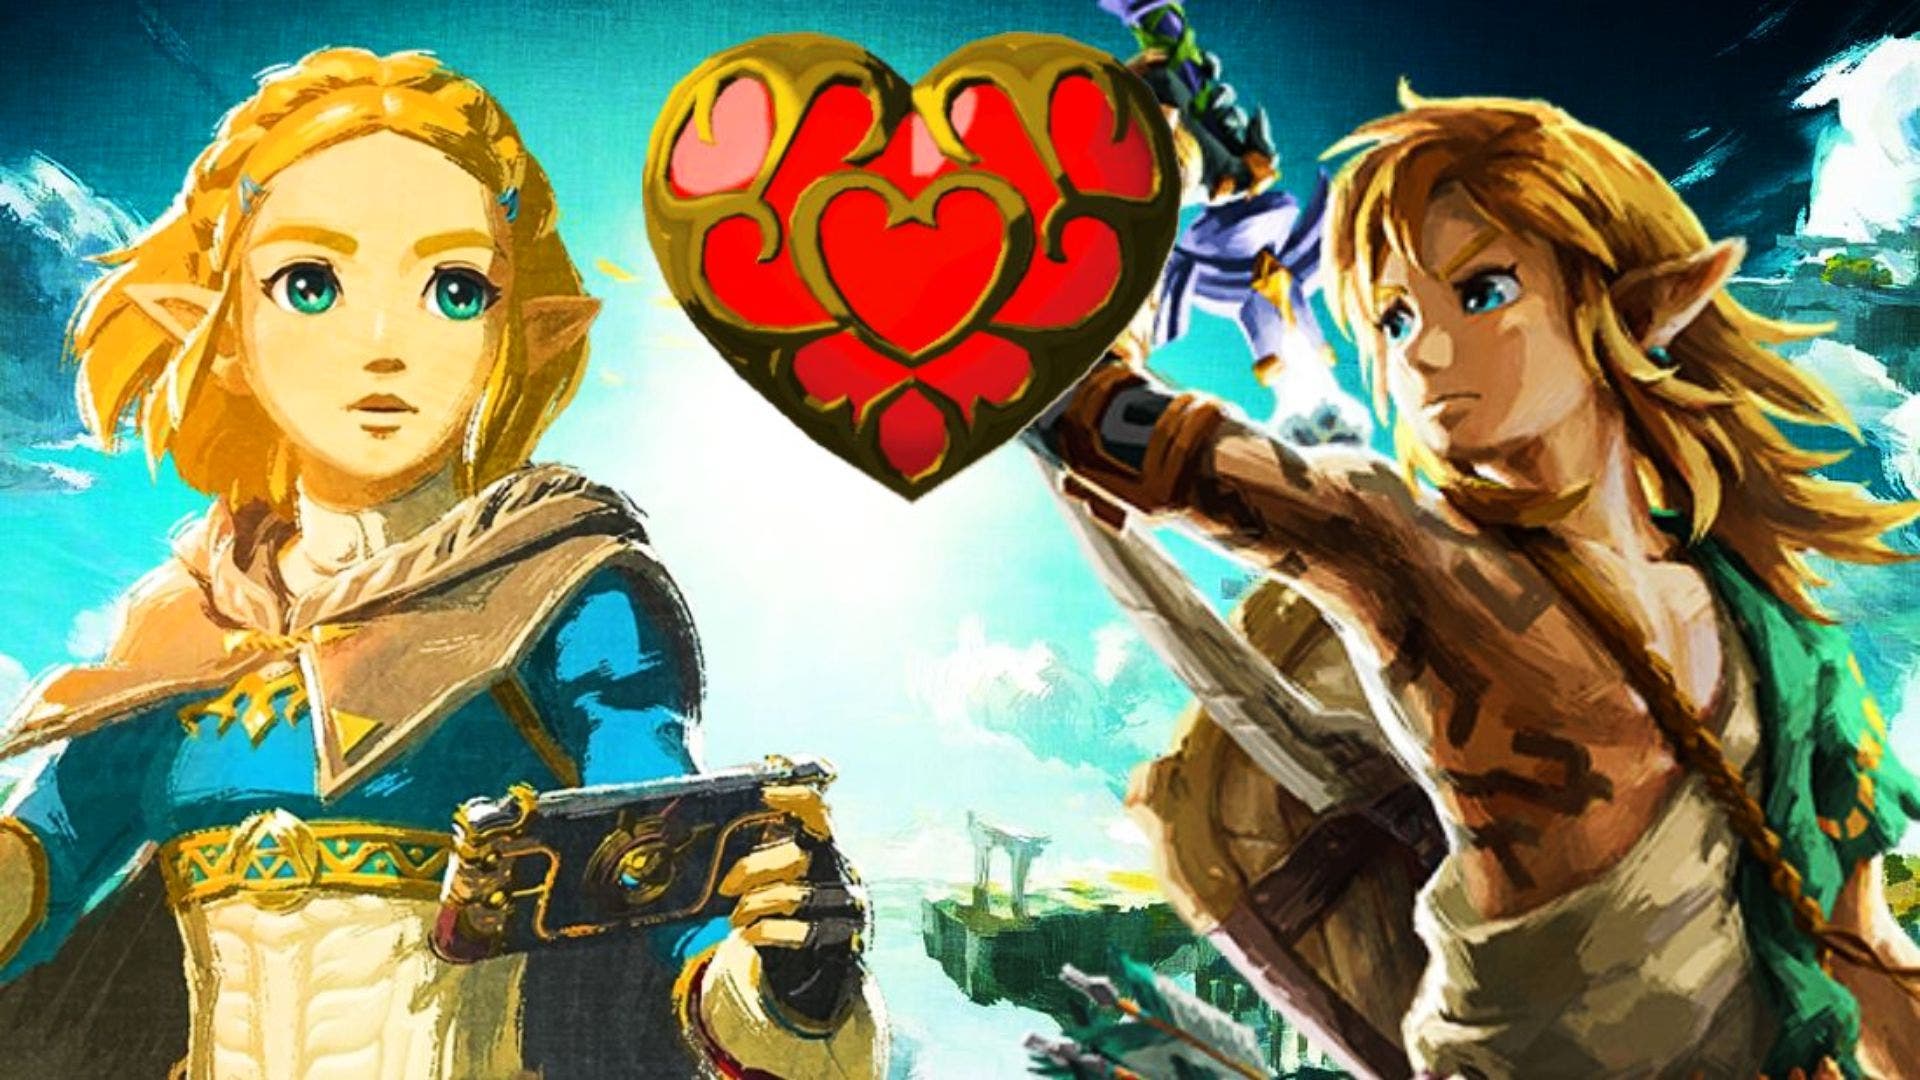 Película de Zelda: Estos serían algunos actores interesantes para el reparto de Link y Zelda